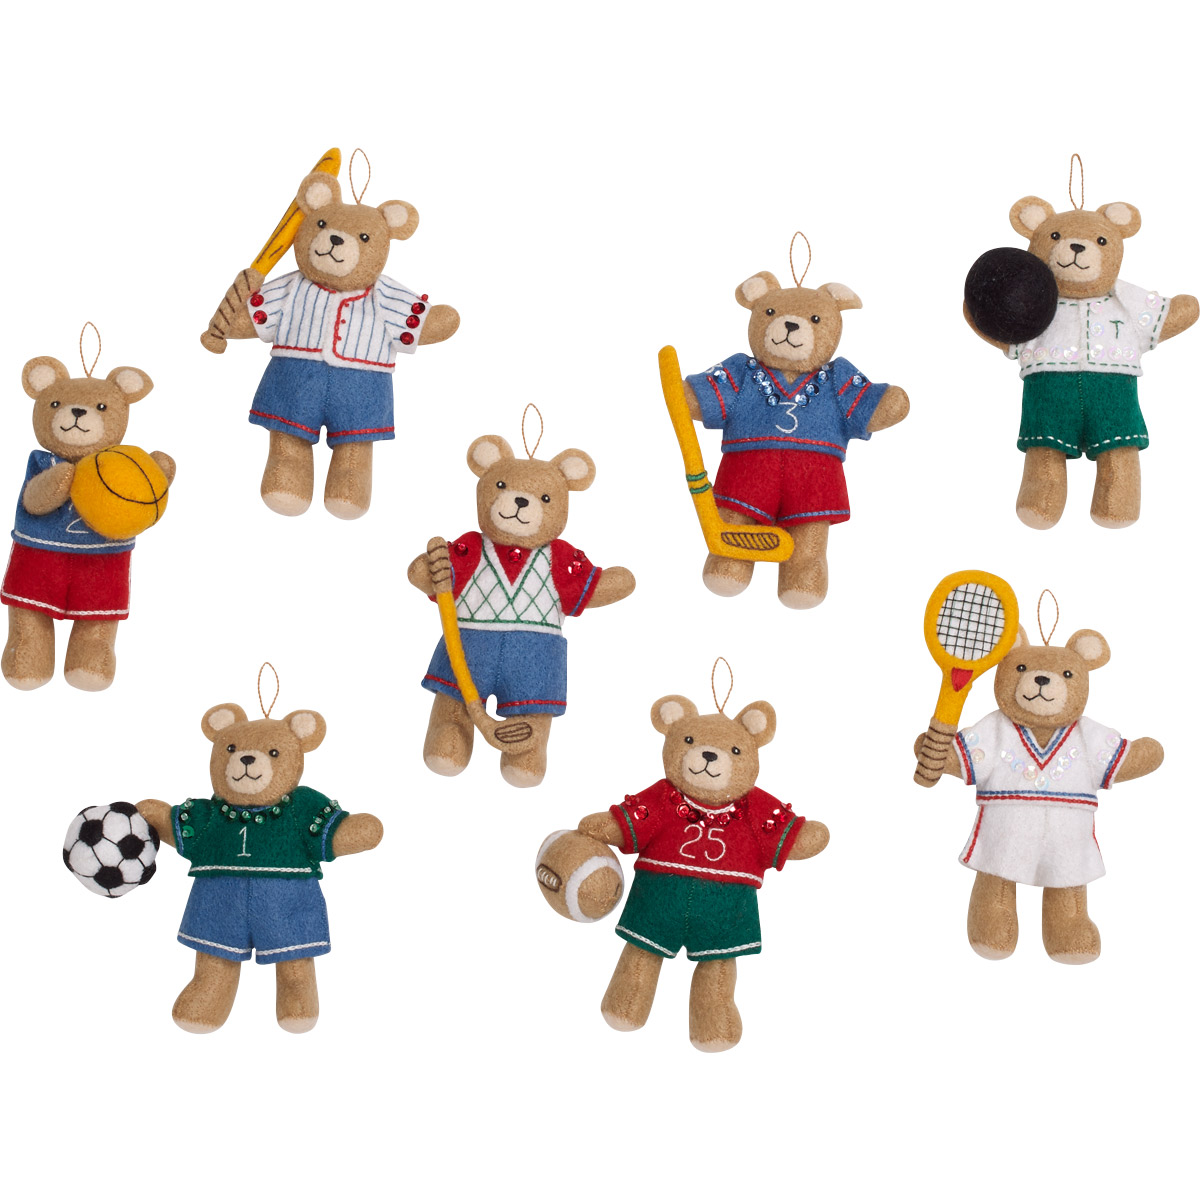 Bucilla ® Seasonal - Felt - Ornament Kits - Sporty Bears - 86988E